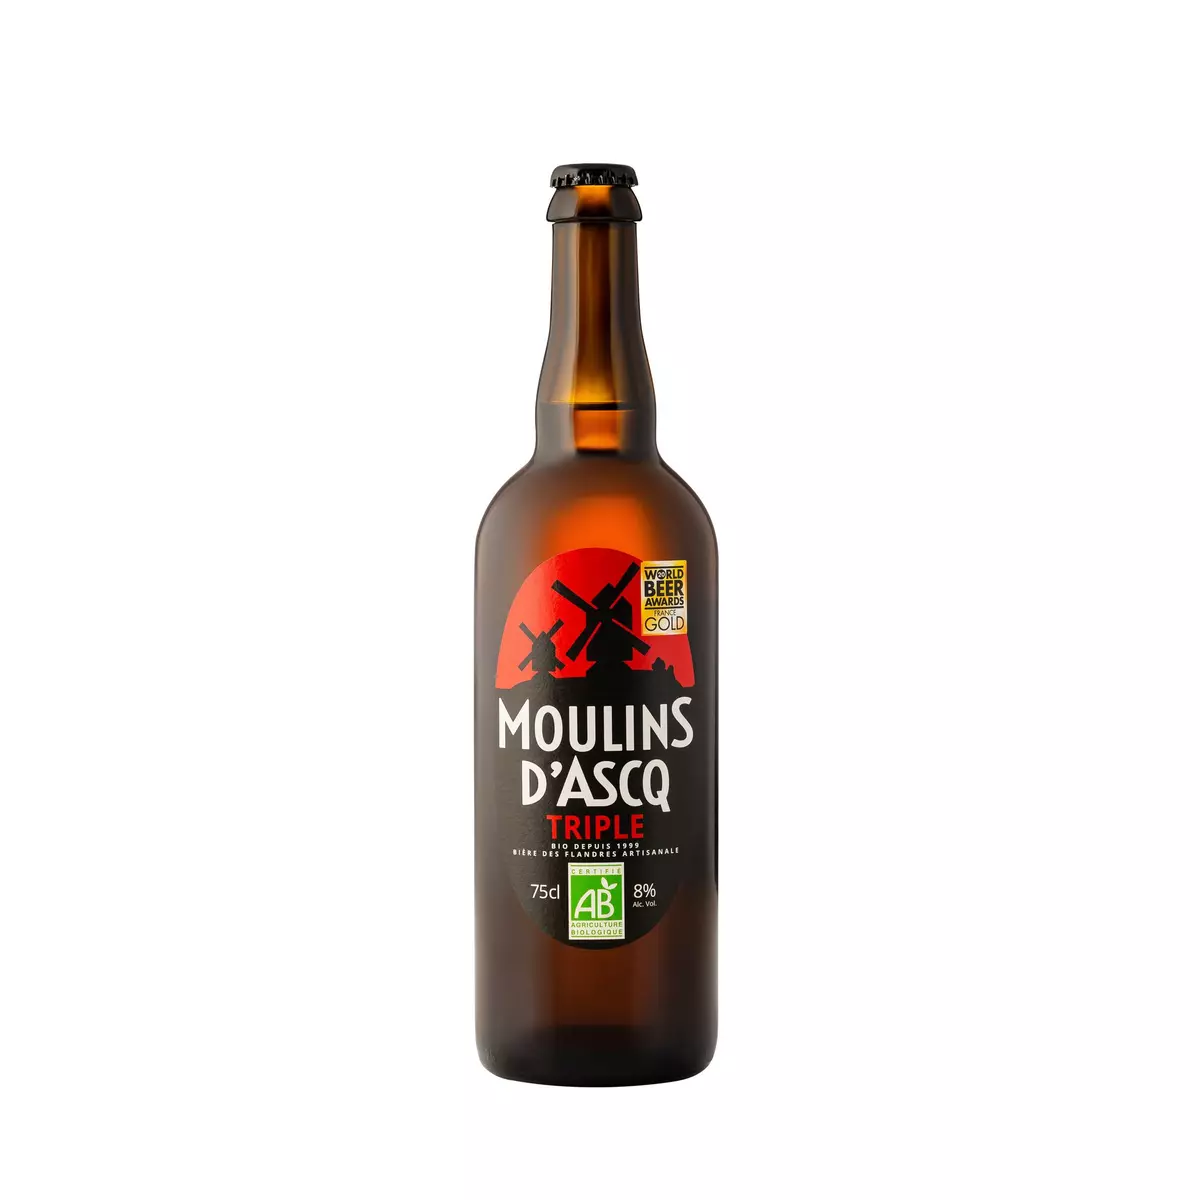 MOULINS D'ASCQ Bière triple artisanale des Flandres bio 8% 75cl